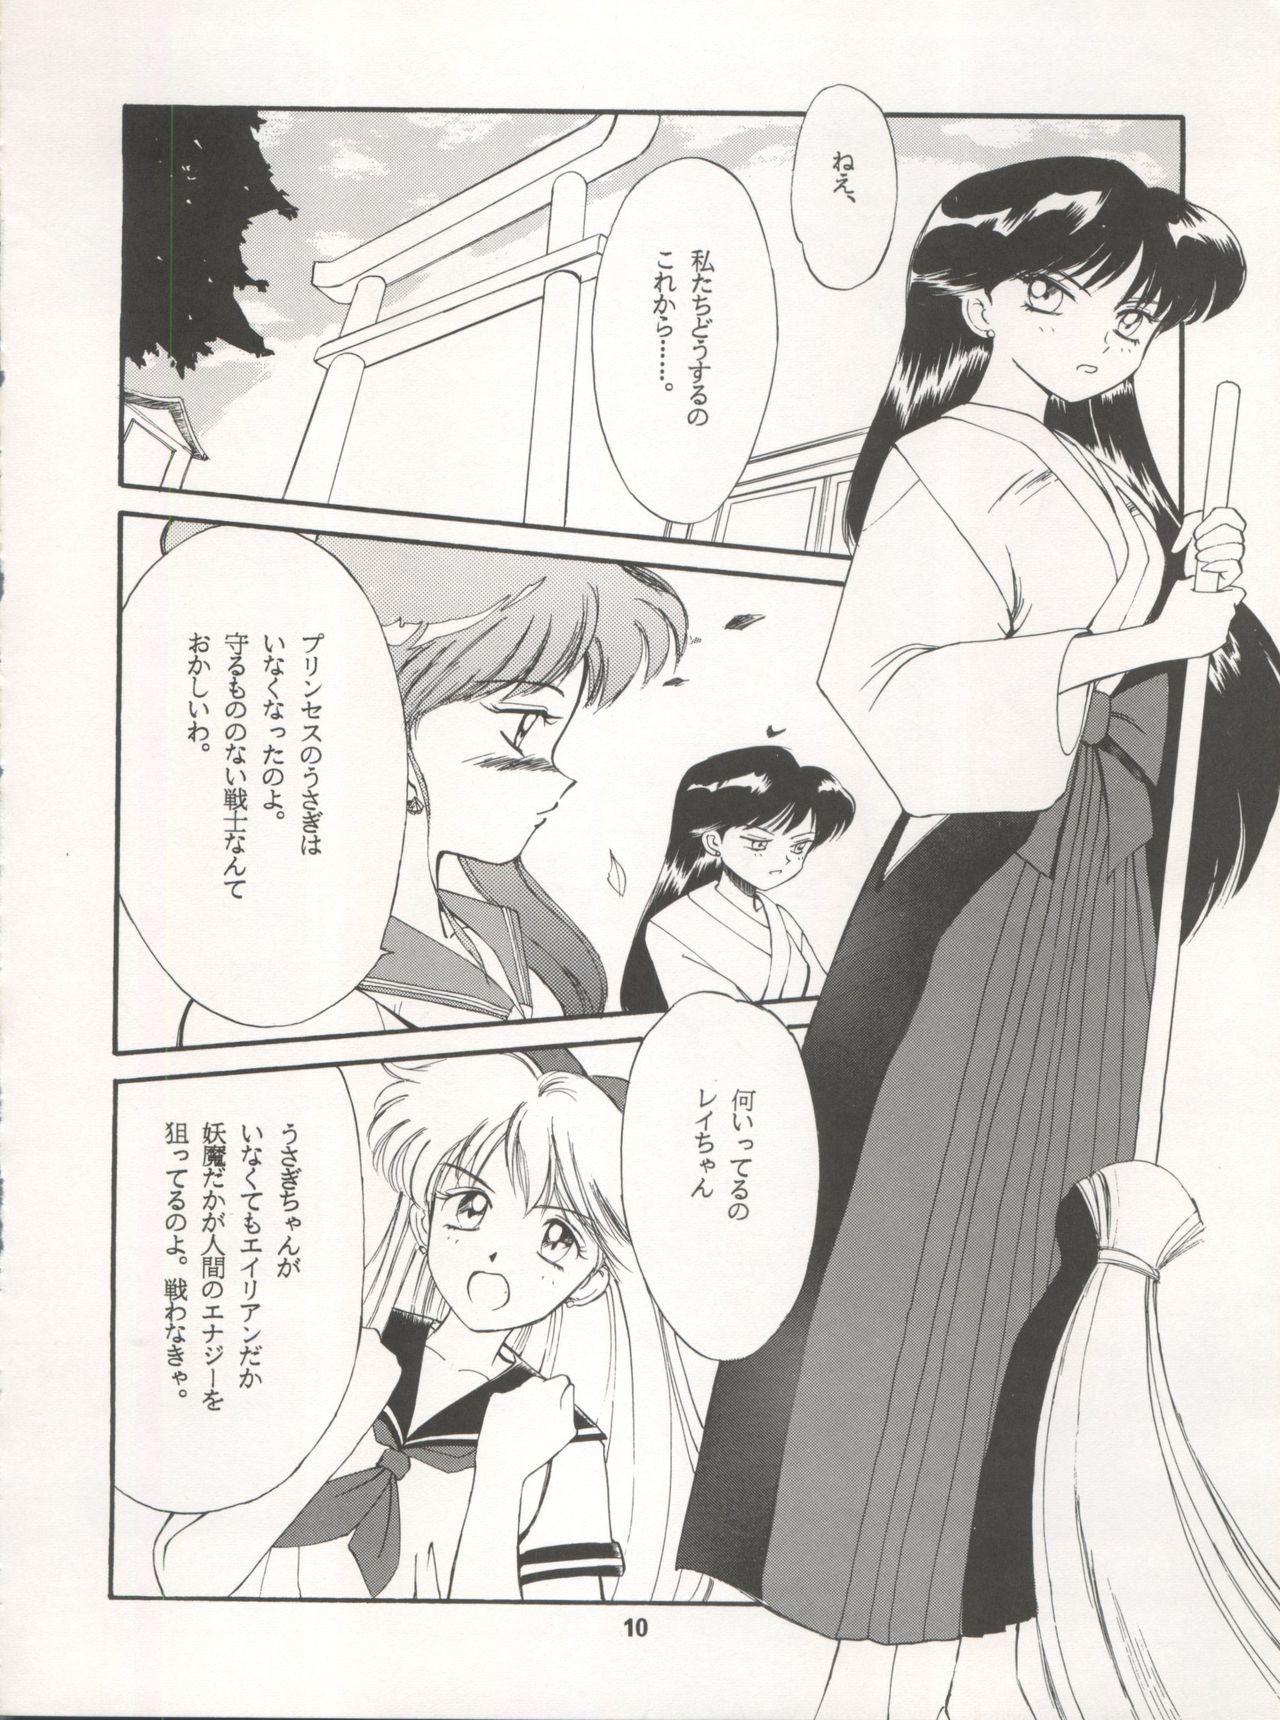 Francais LUNATIC ASYLUM DYNAMIC SUMMER - Sailor moon Kinky - Page 10